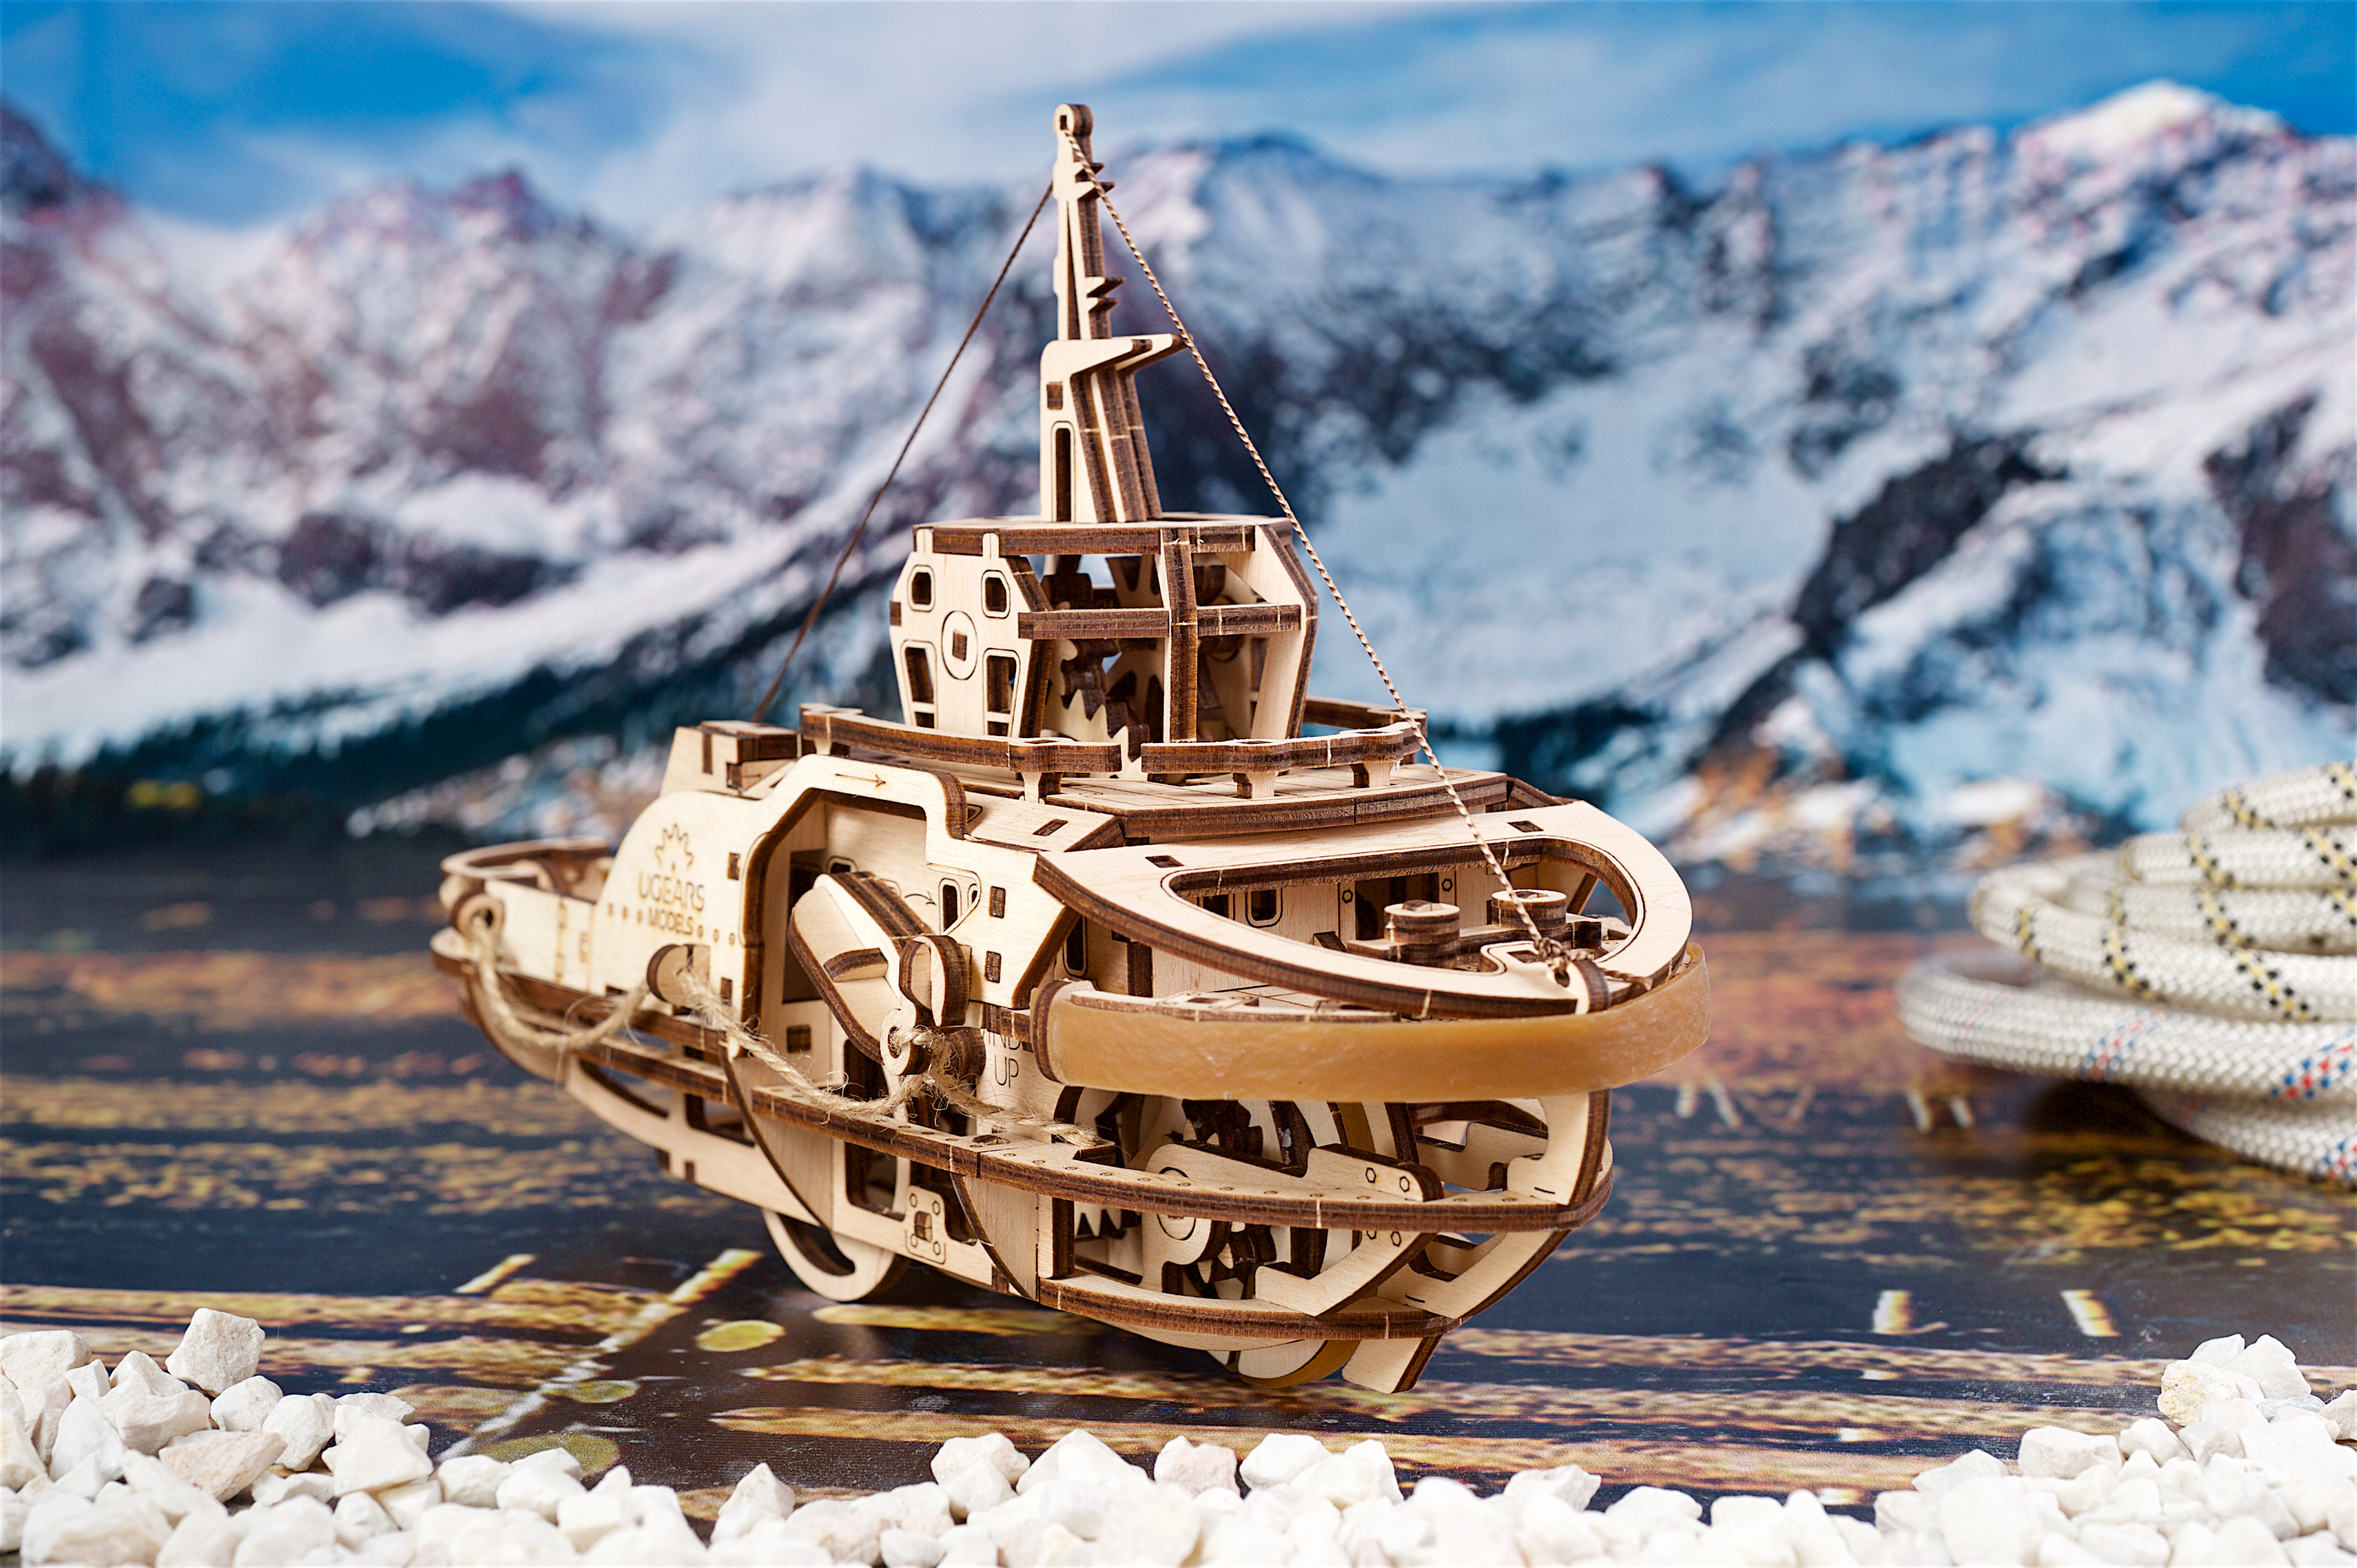 Mô hình gỗ cơ khí tự chuyển động- UGEARS Tugboat - Tàu phá băng, Hàng chính Hãng Ugears, nhập khẩu nguyên bộ EU, mô hình lắp ráp 3D, đồ chơi trí tuệ DYI